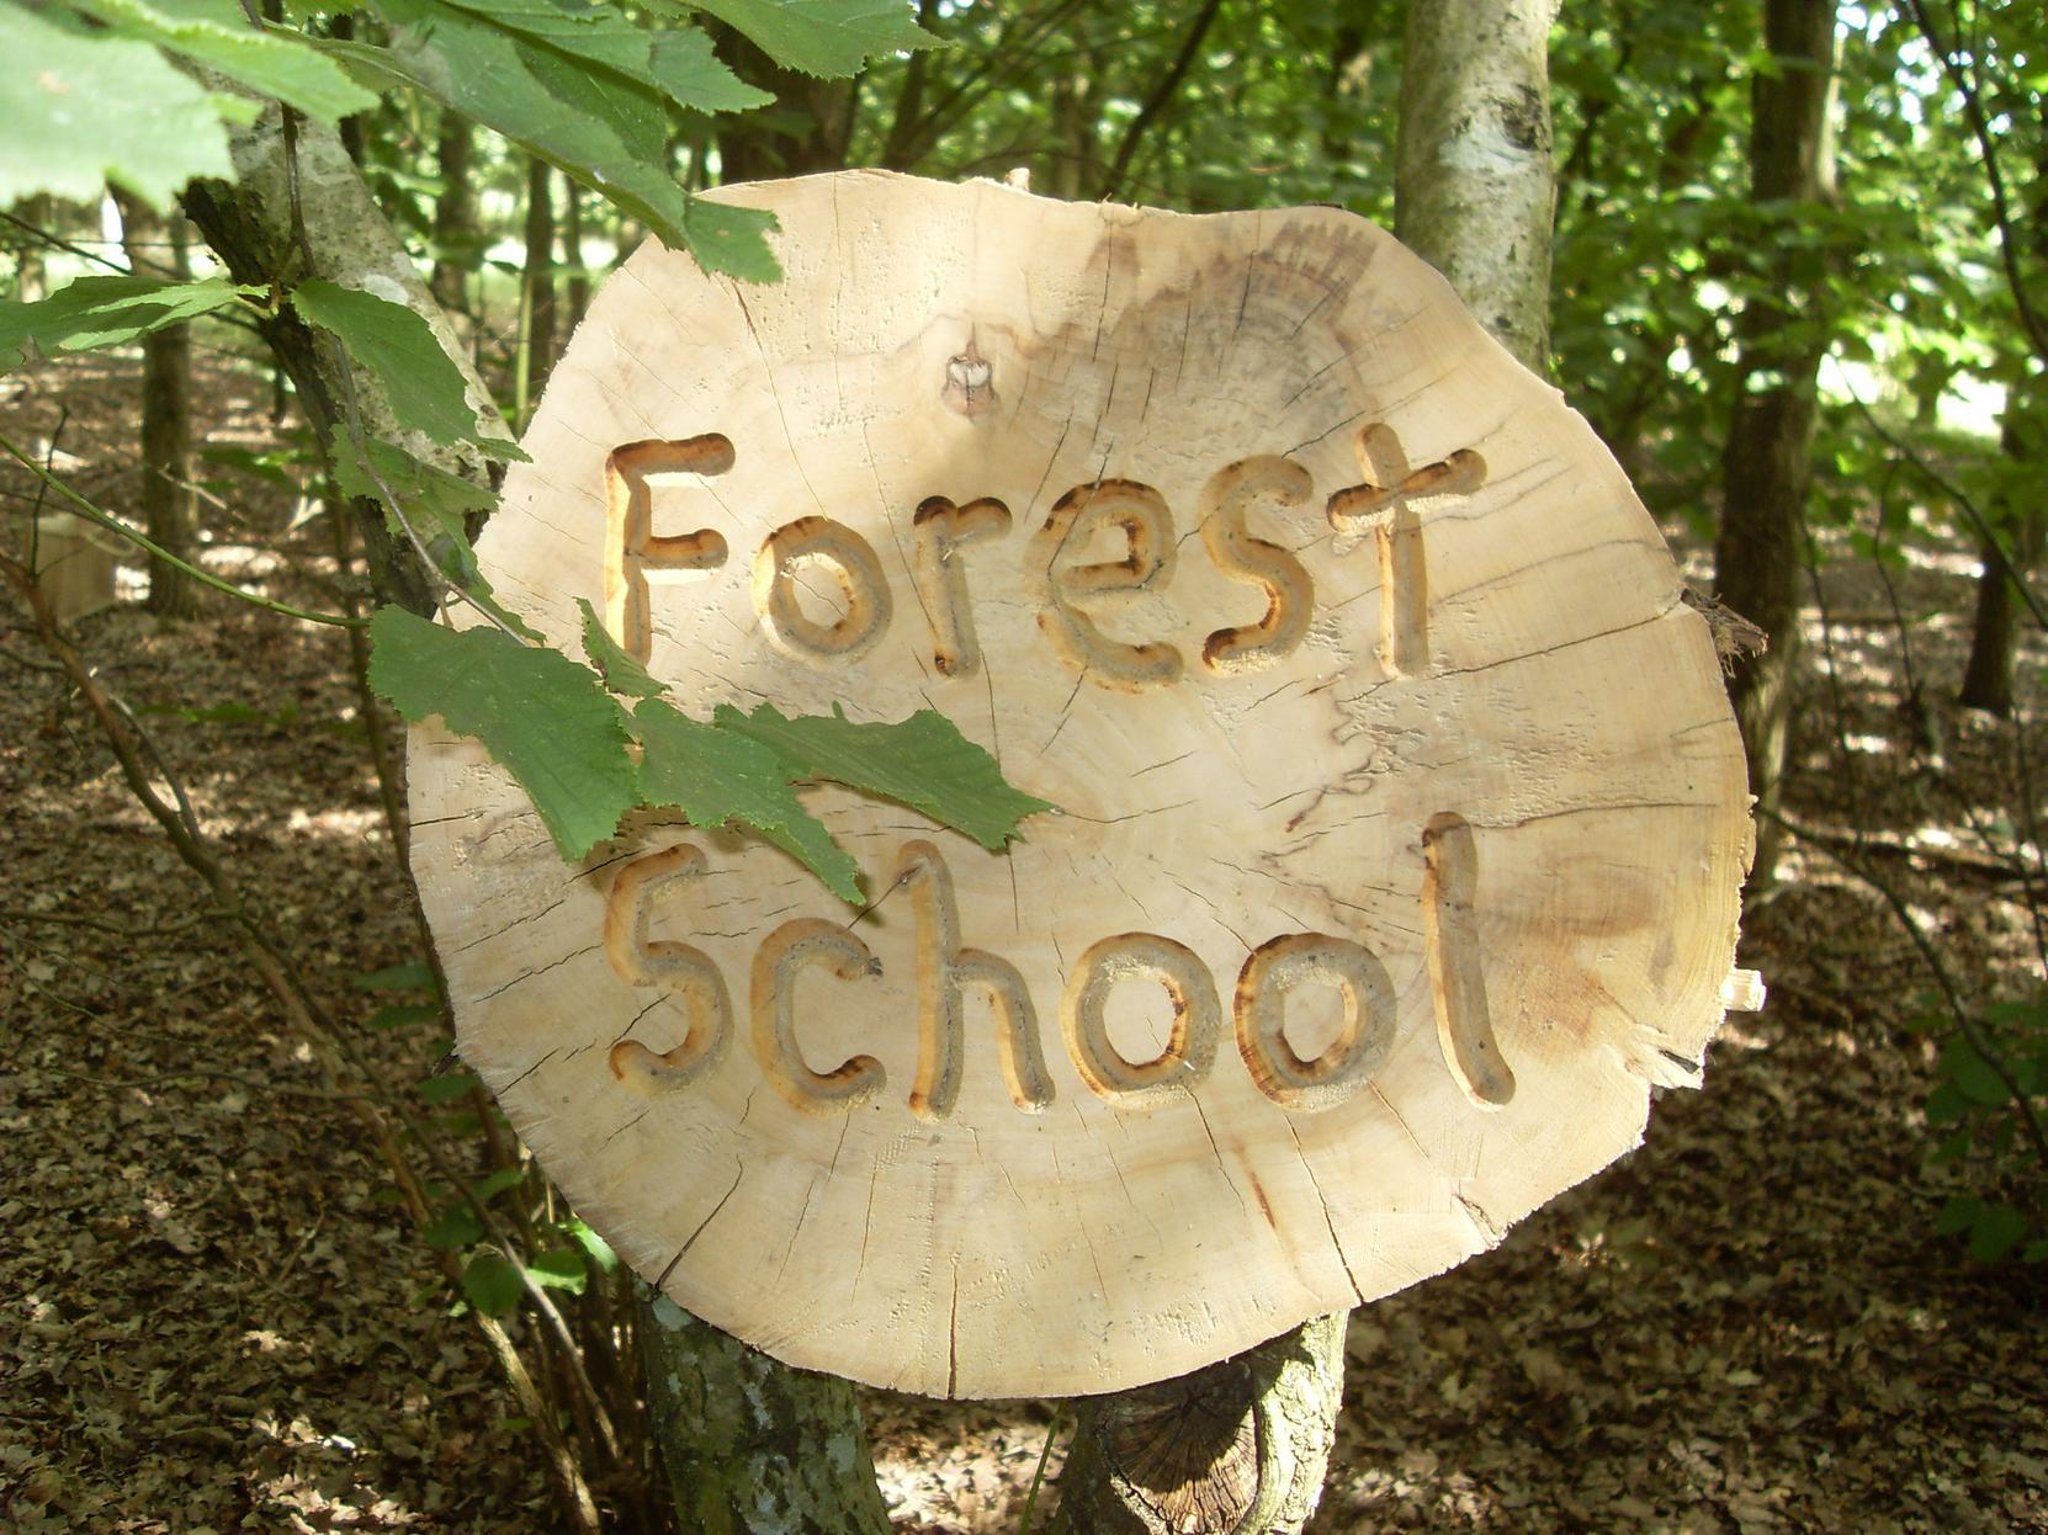 Forest School - Wilden VA Primary School